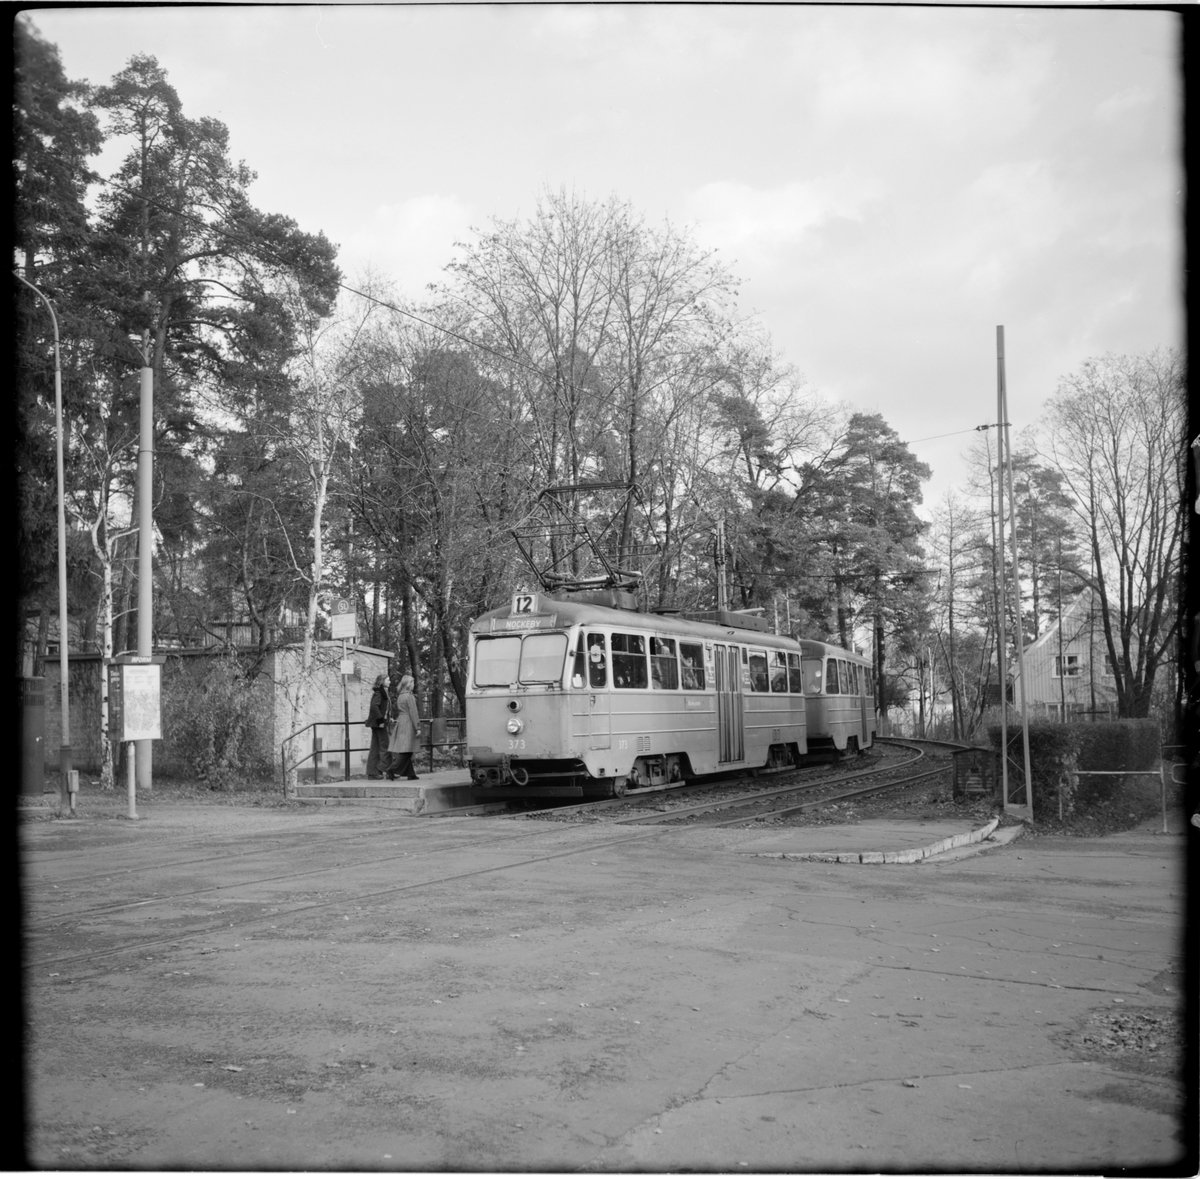 Aktiebolaget Stockholms Spårvägar, SS A24 373 "ängbyvagn" linje 12 Nockeby vid hållplats Smedslättstorget, vagn mot Nockeby.